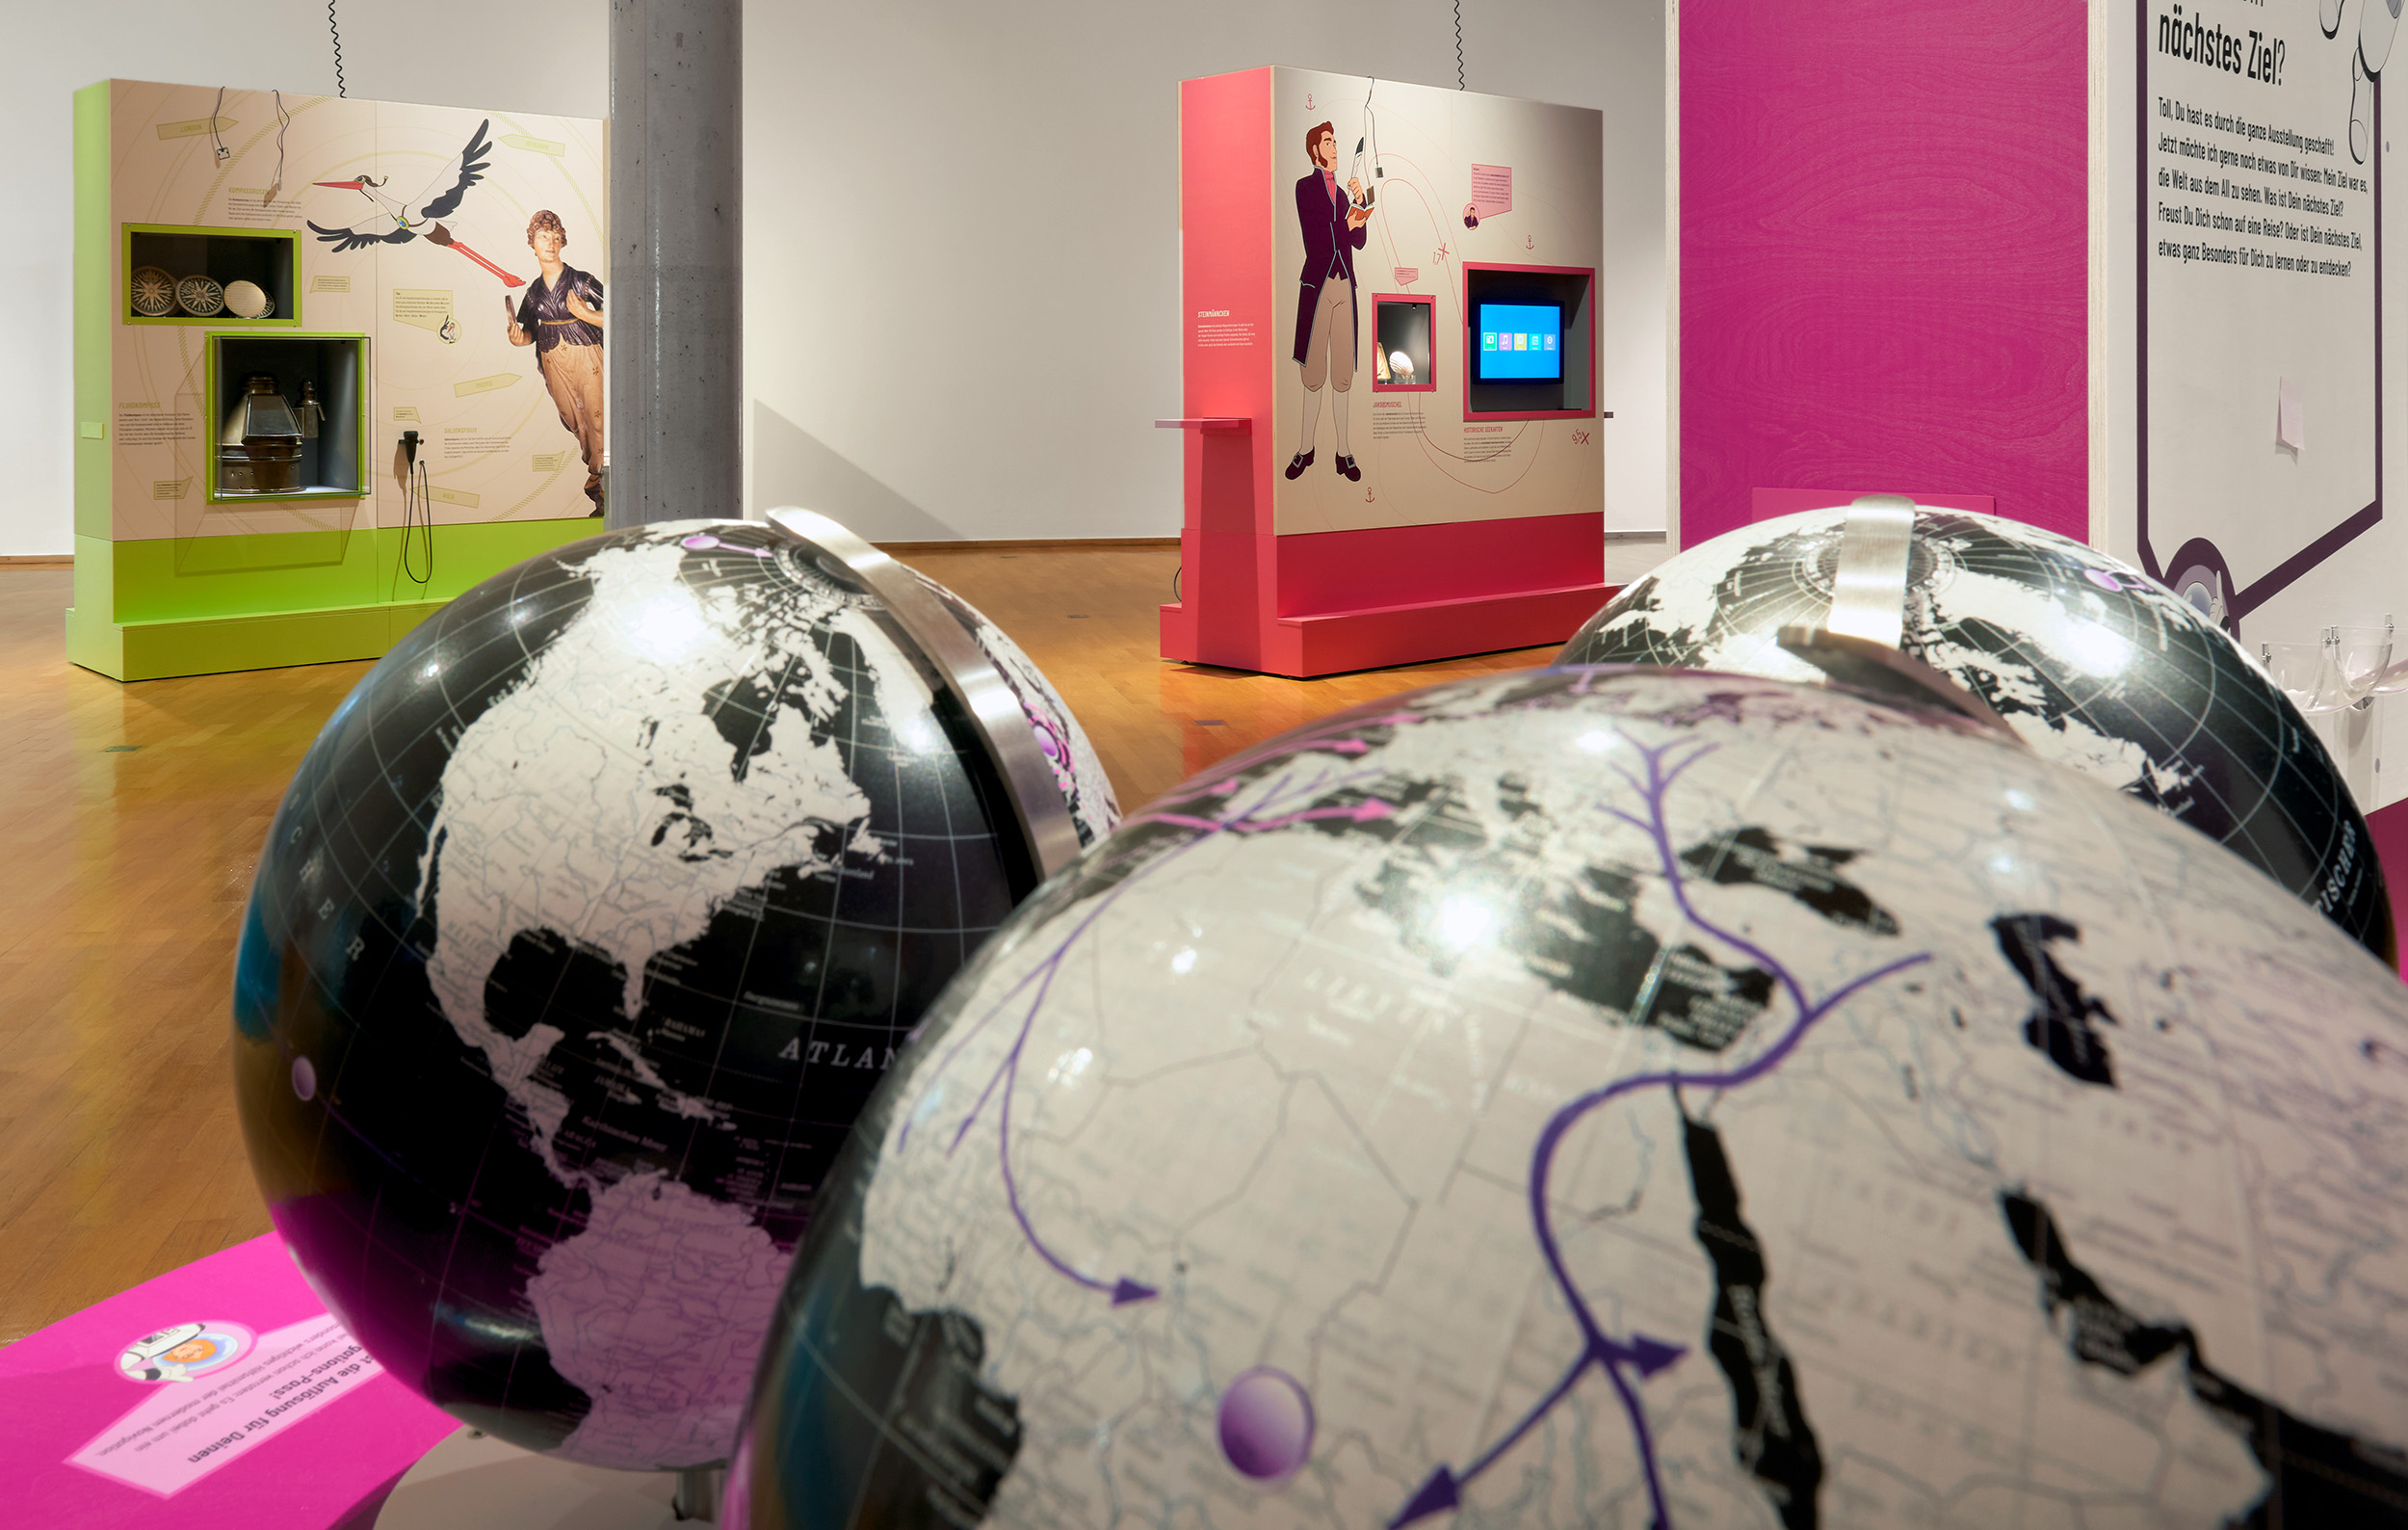 Im Vordergrund drei Globen, im Hintergrund farbige Ausstellungswände